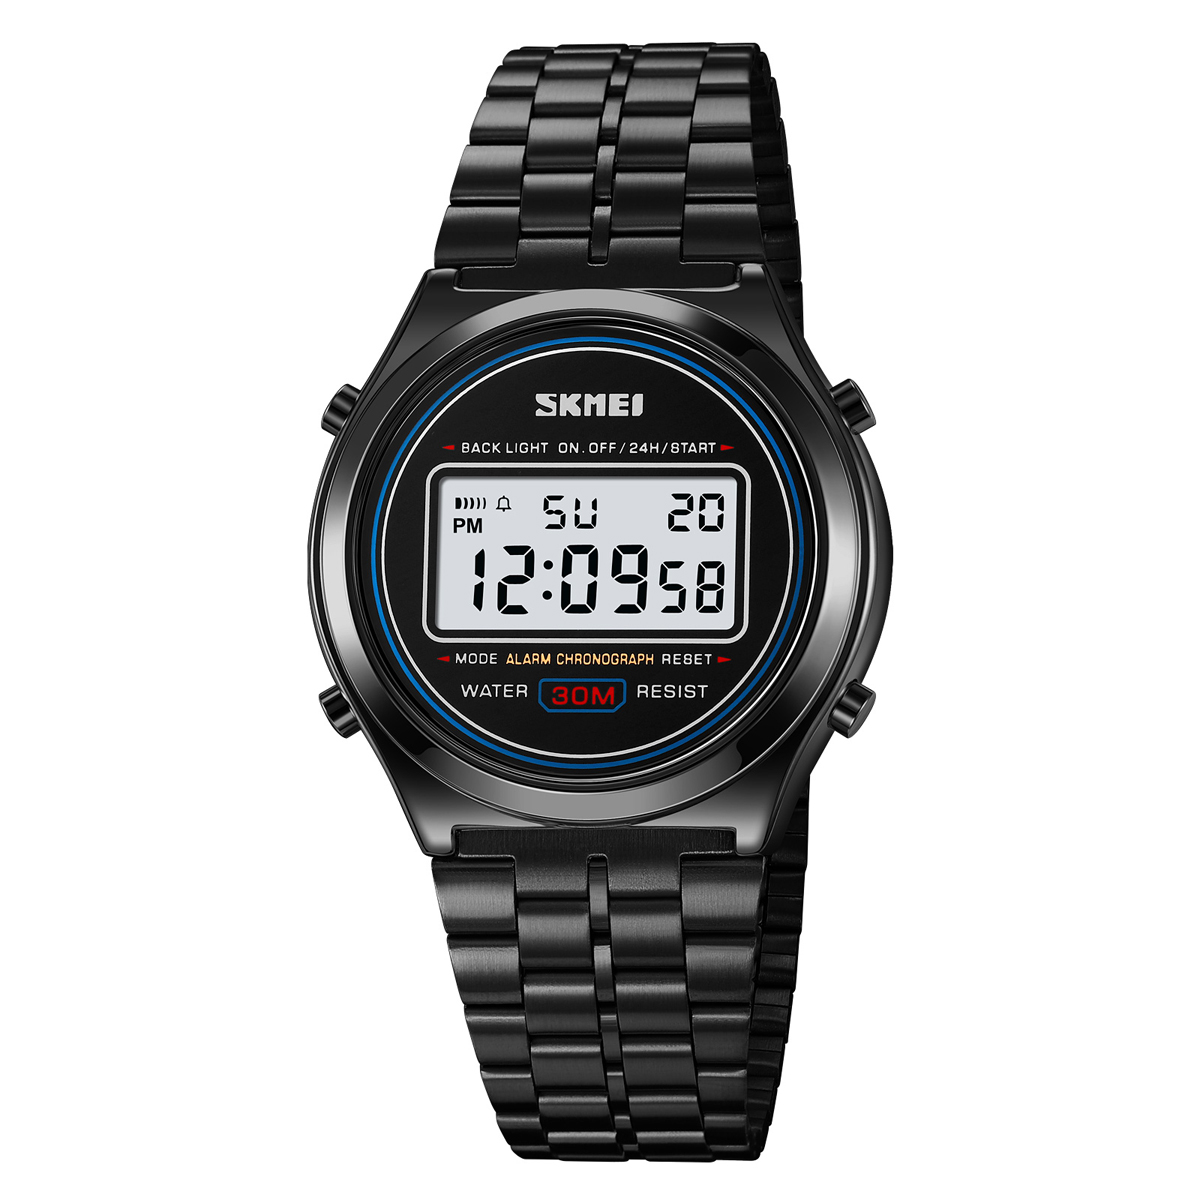 SKMEI - SKMEI-reloj deportivo Digital para hombre, cronómetro con pantalla de luz trasera de acero inoxidable, de lujo, resistente al agua, con alarma de Fecha